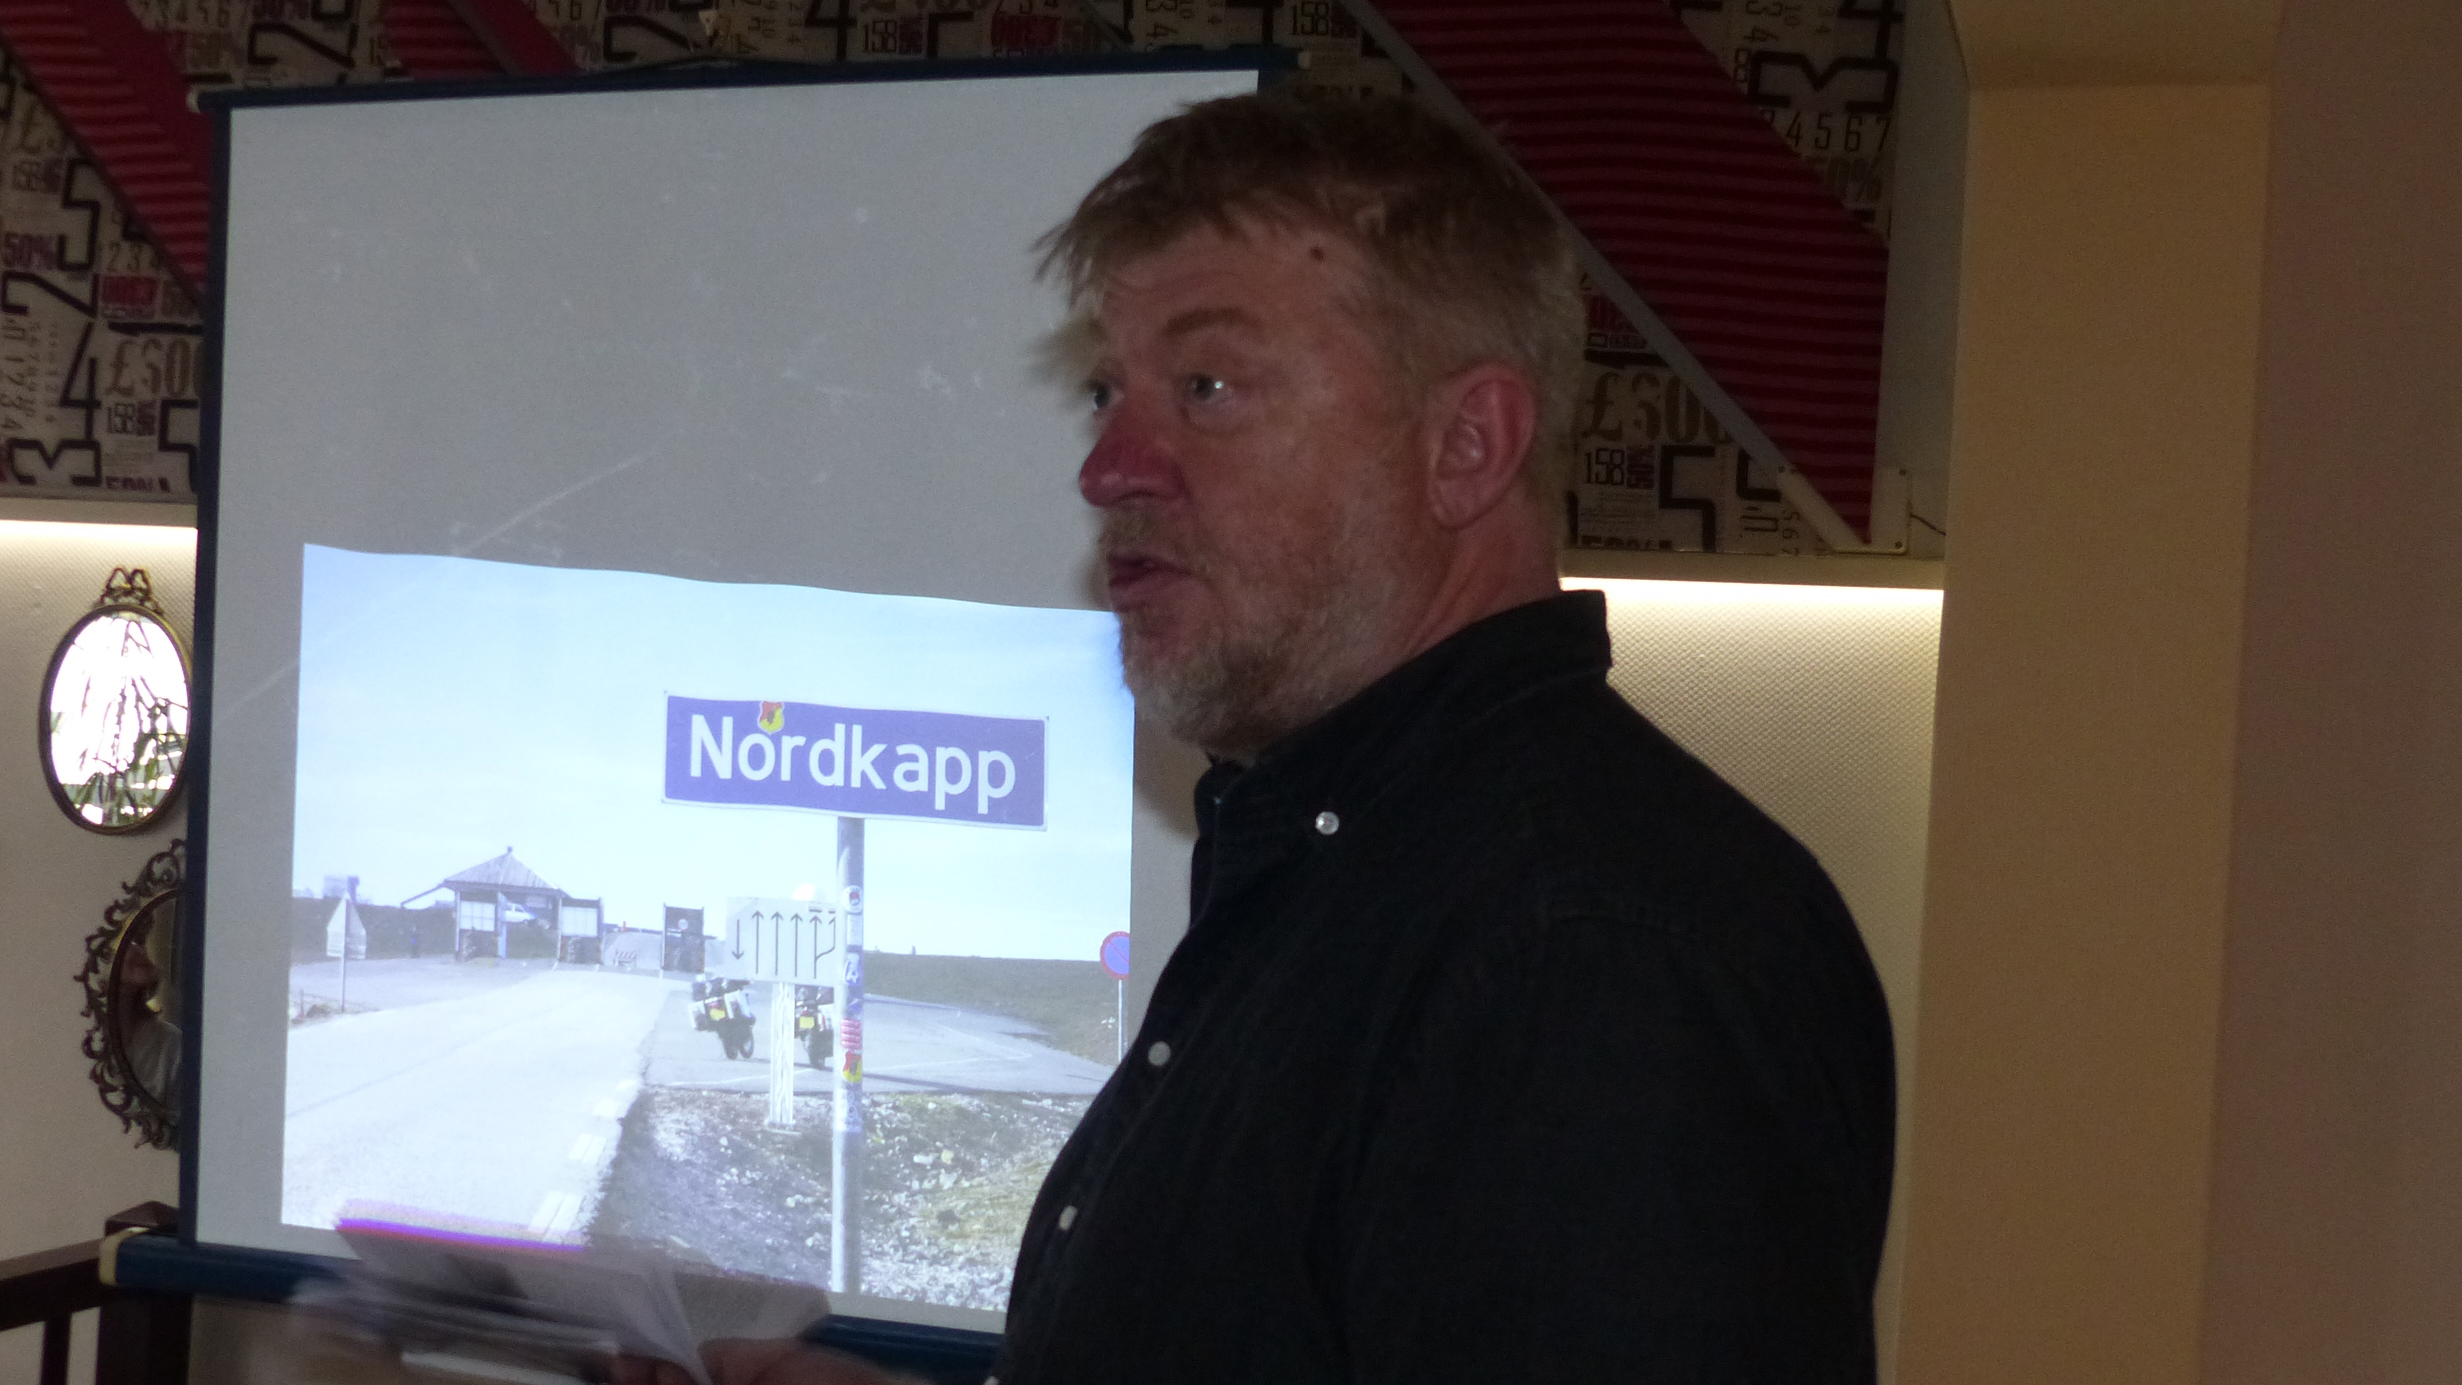 Paddy Schmidt beim Vortrag "Far away" mit Foto vom Nordkap.